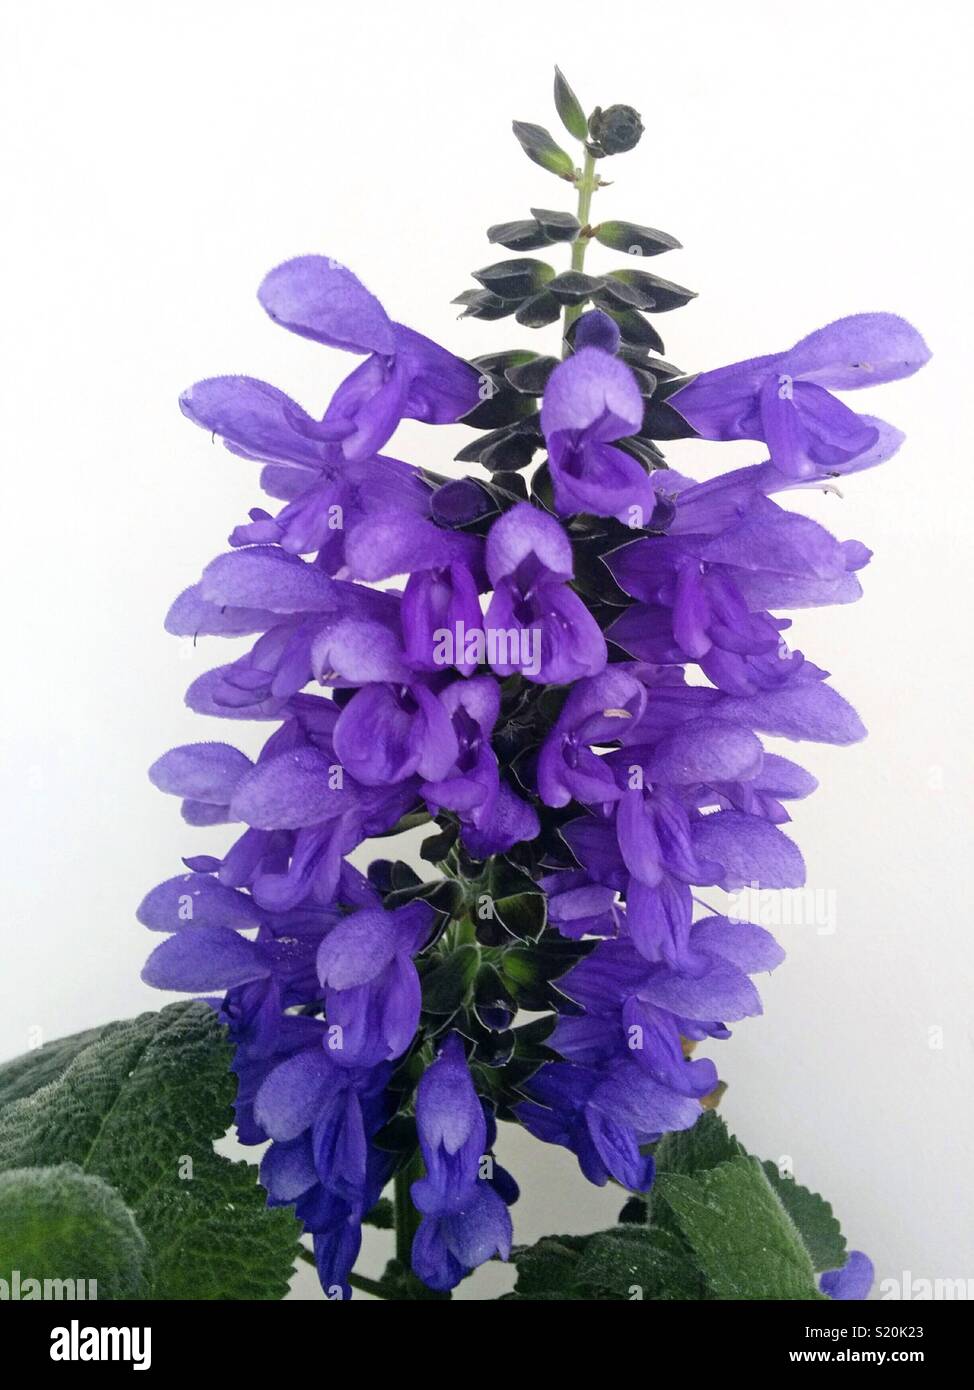 Salvia azurea. Stock Photo